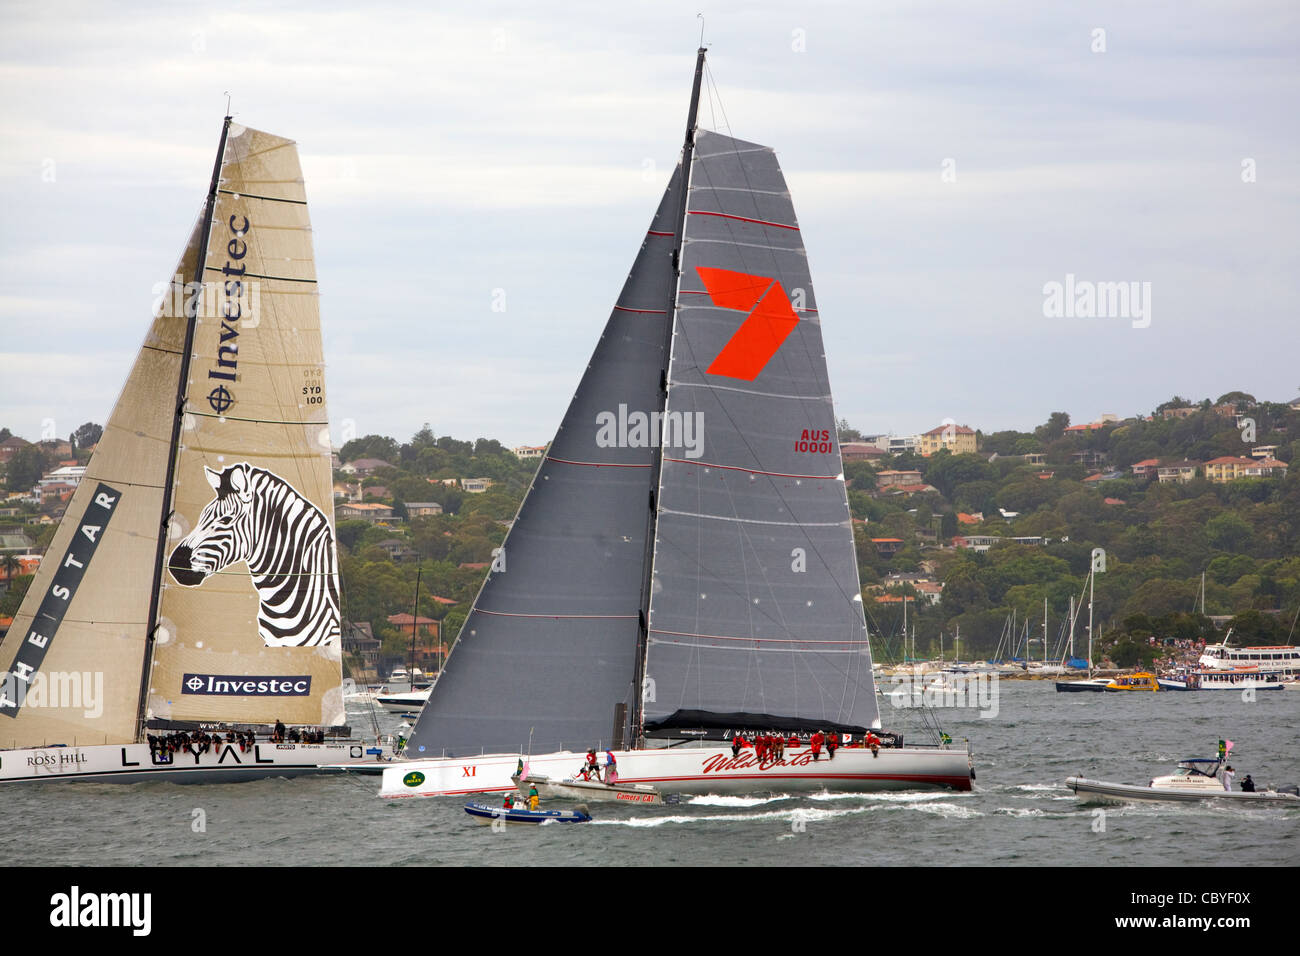 Avoine loyale et sauvage Investec x1 au départ de la course de yacht Sydney à Hobart 2011. Ces yachts ont terminé premier et deuxième, Sydney, NSW, Australie Banque D'Images